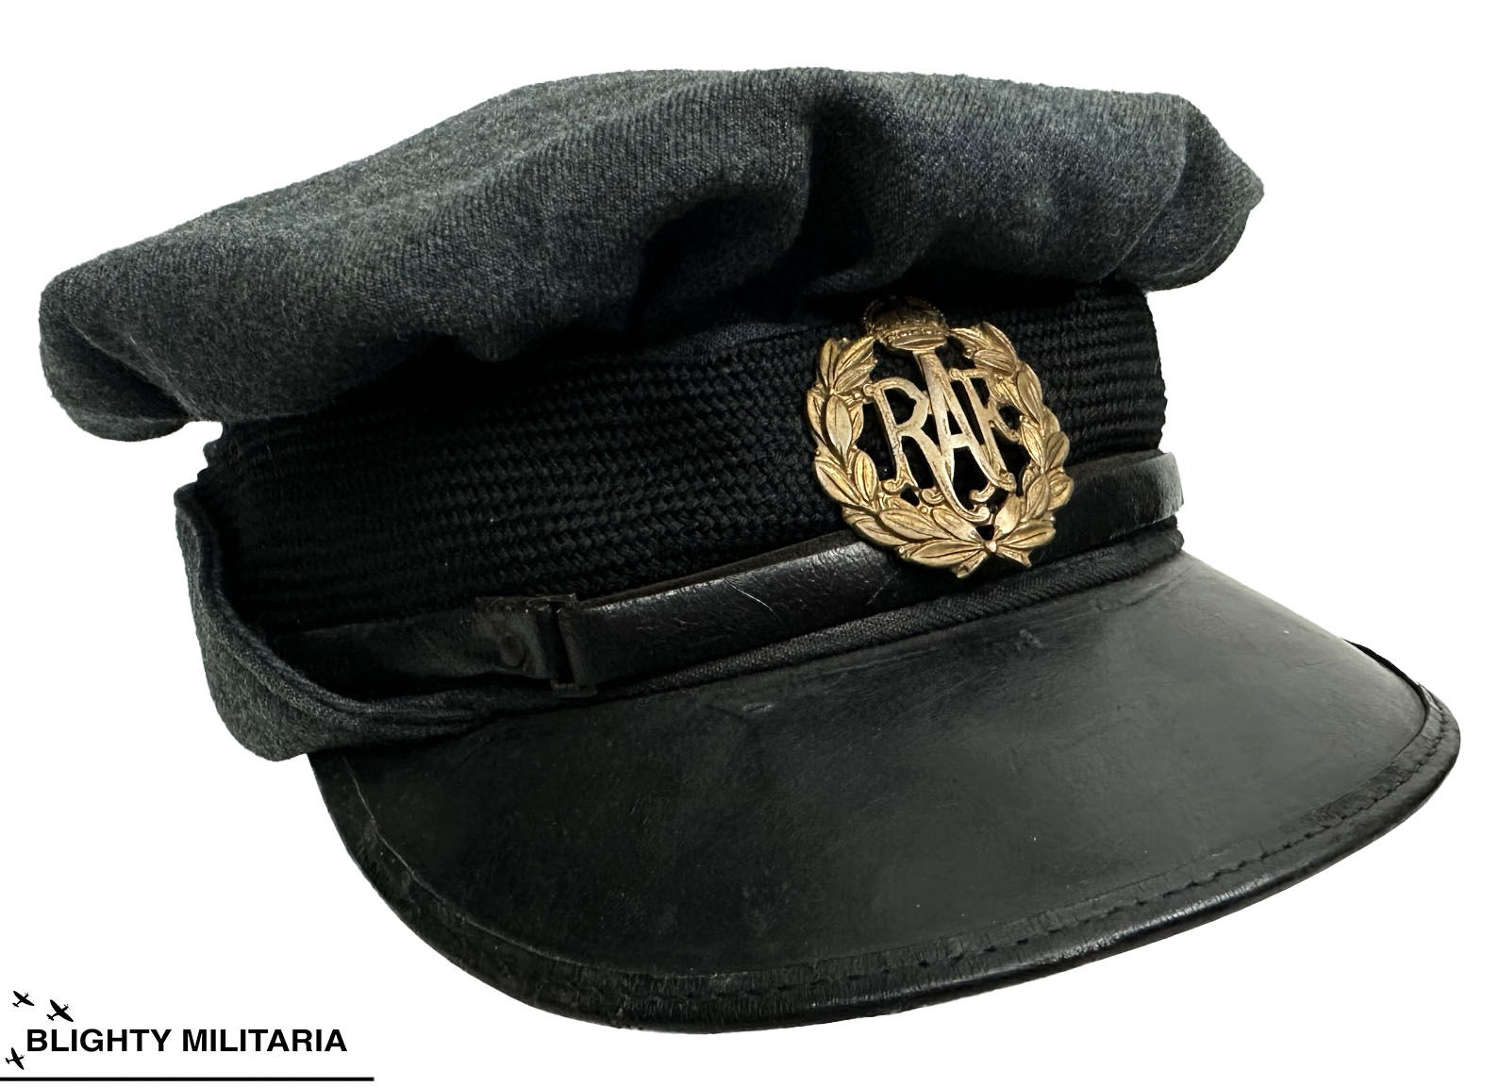 Original WW2 WAAF Peaked Cap